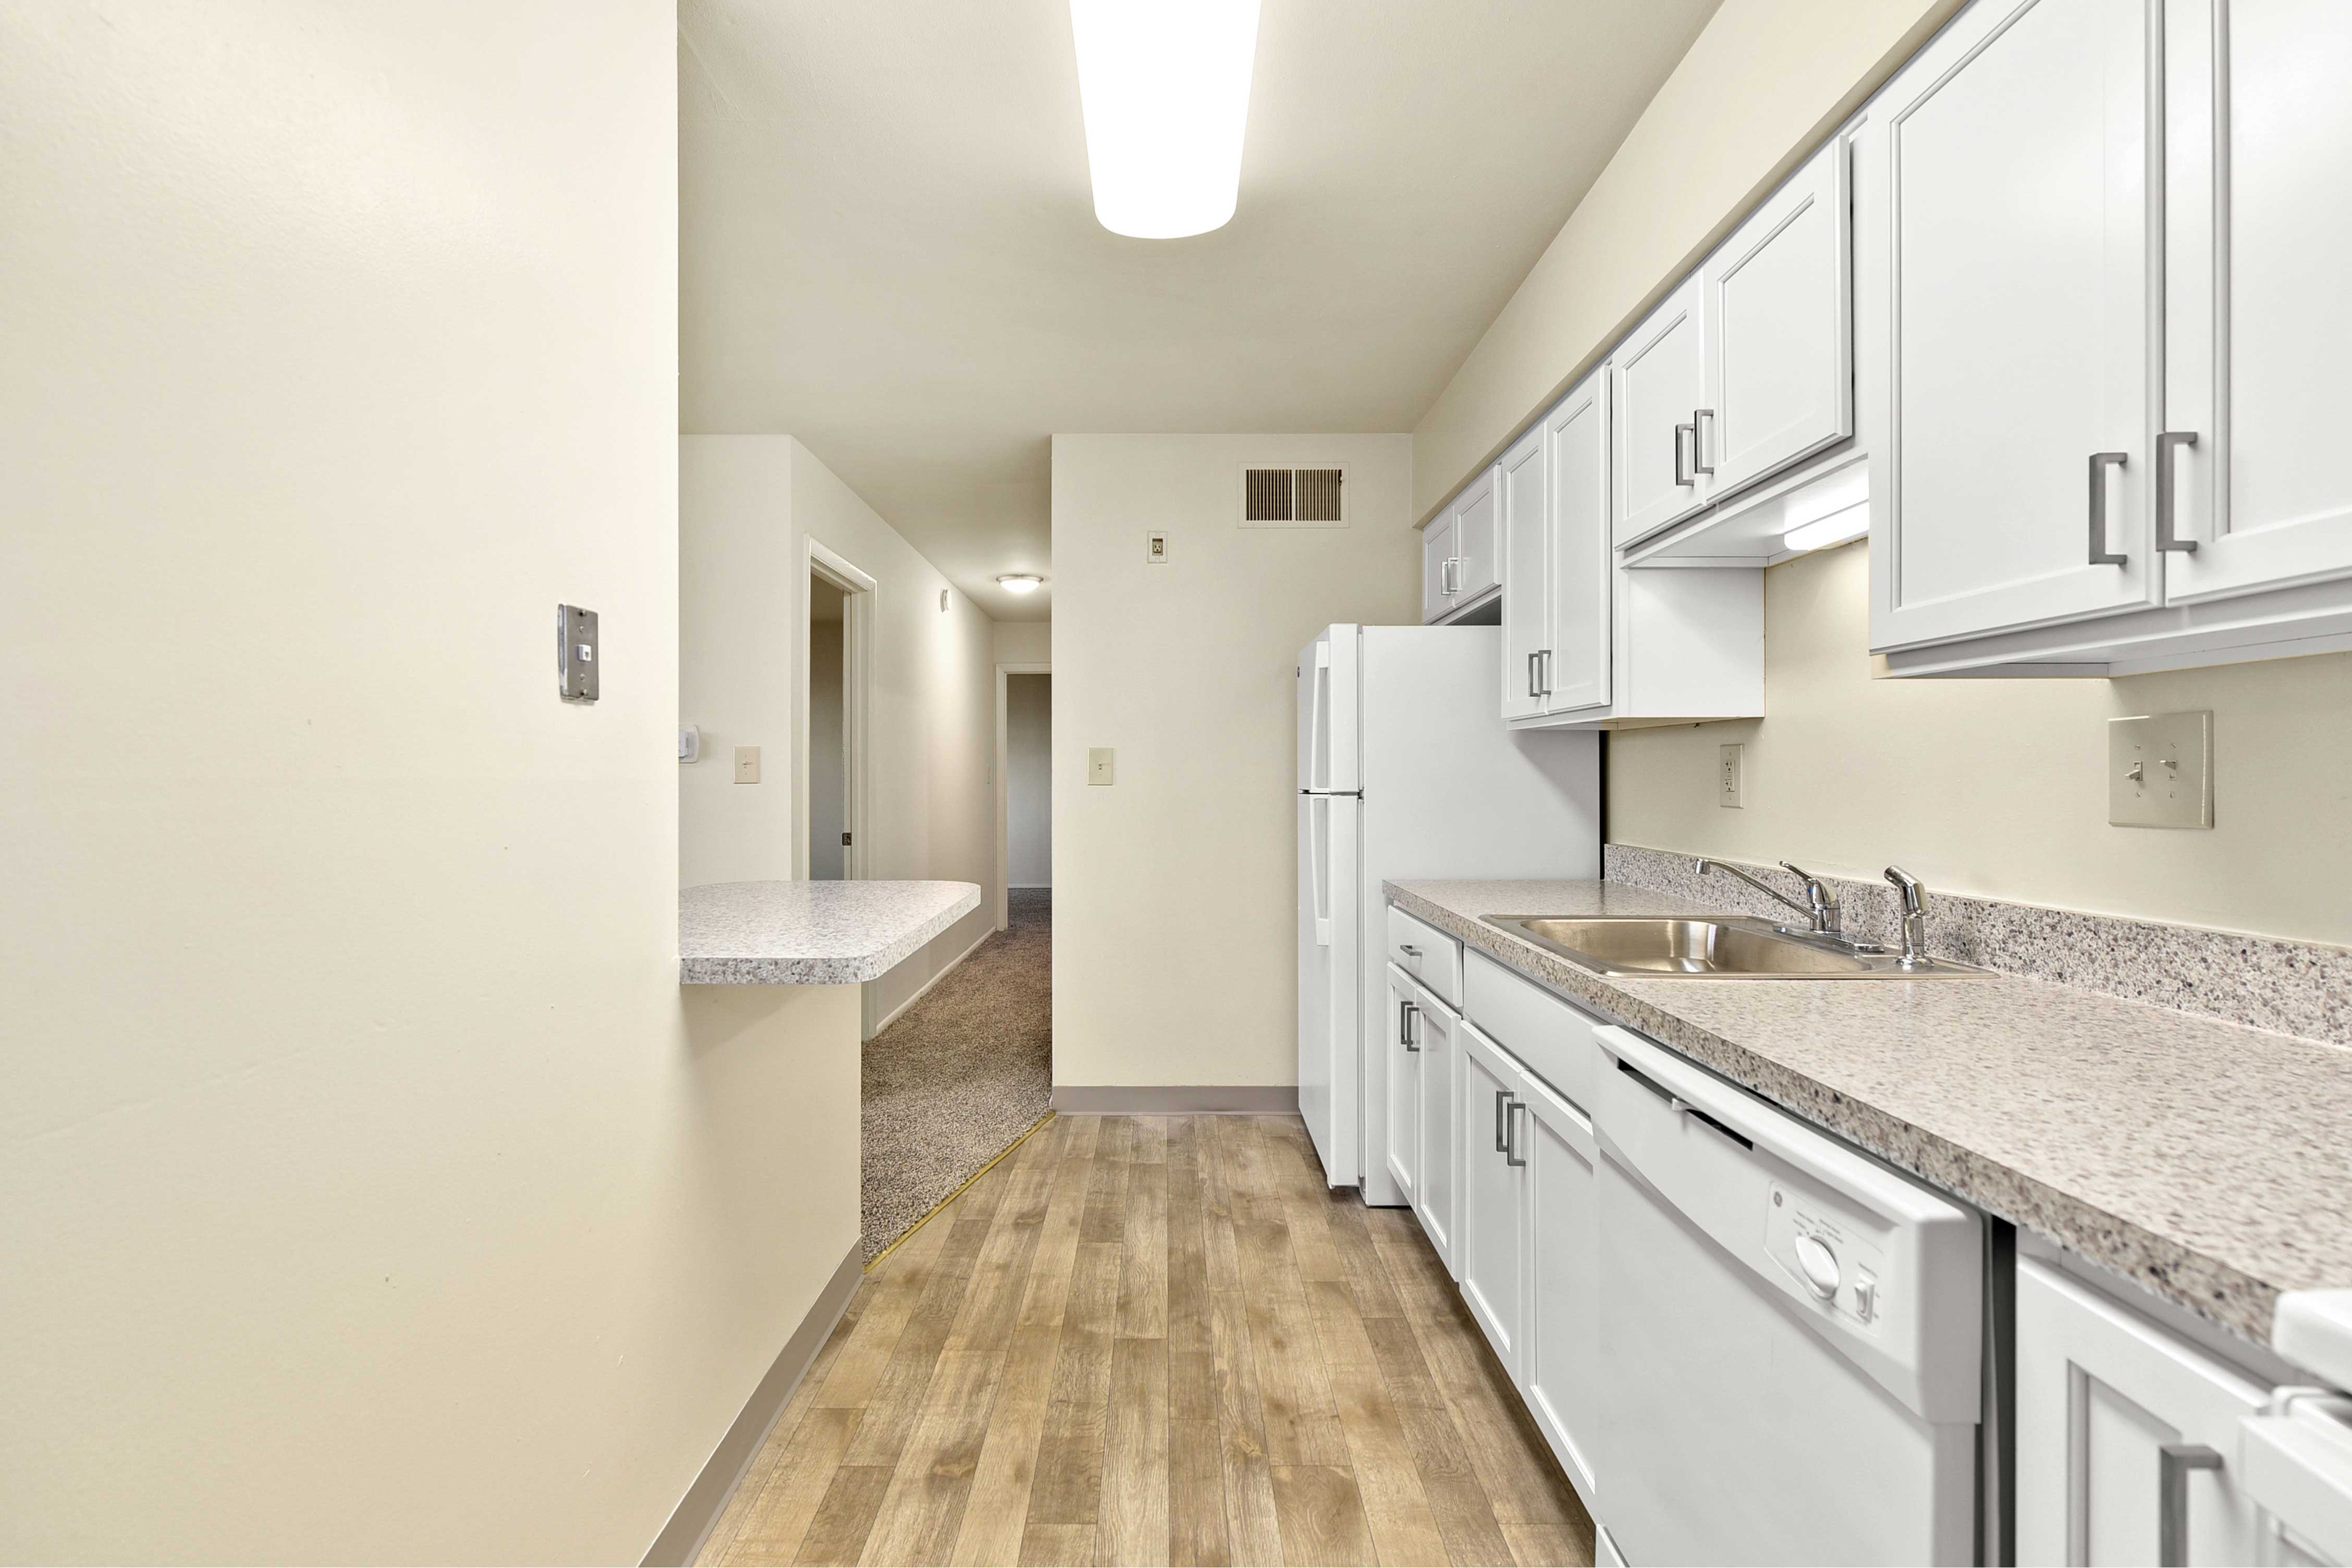 Kitchen with Hallway